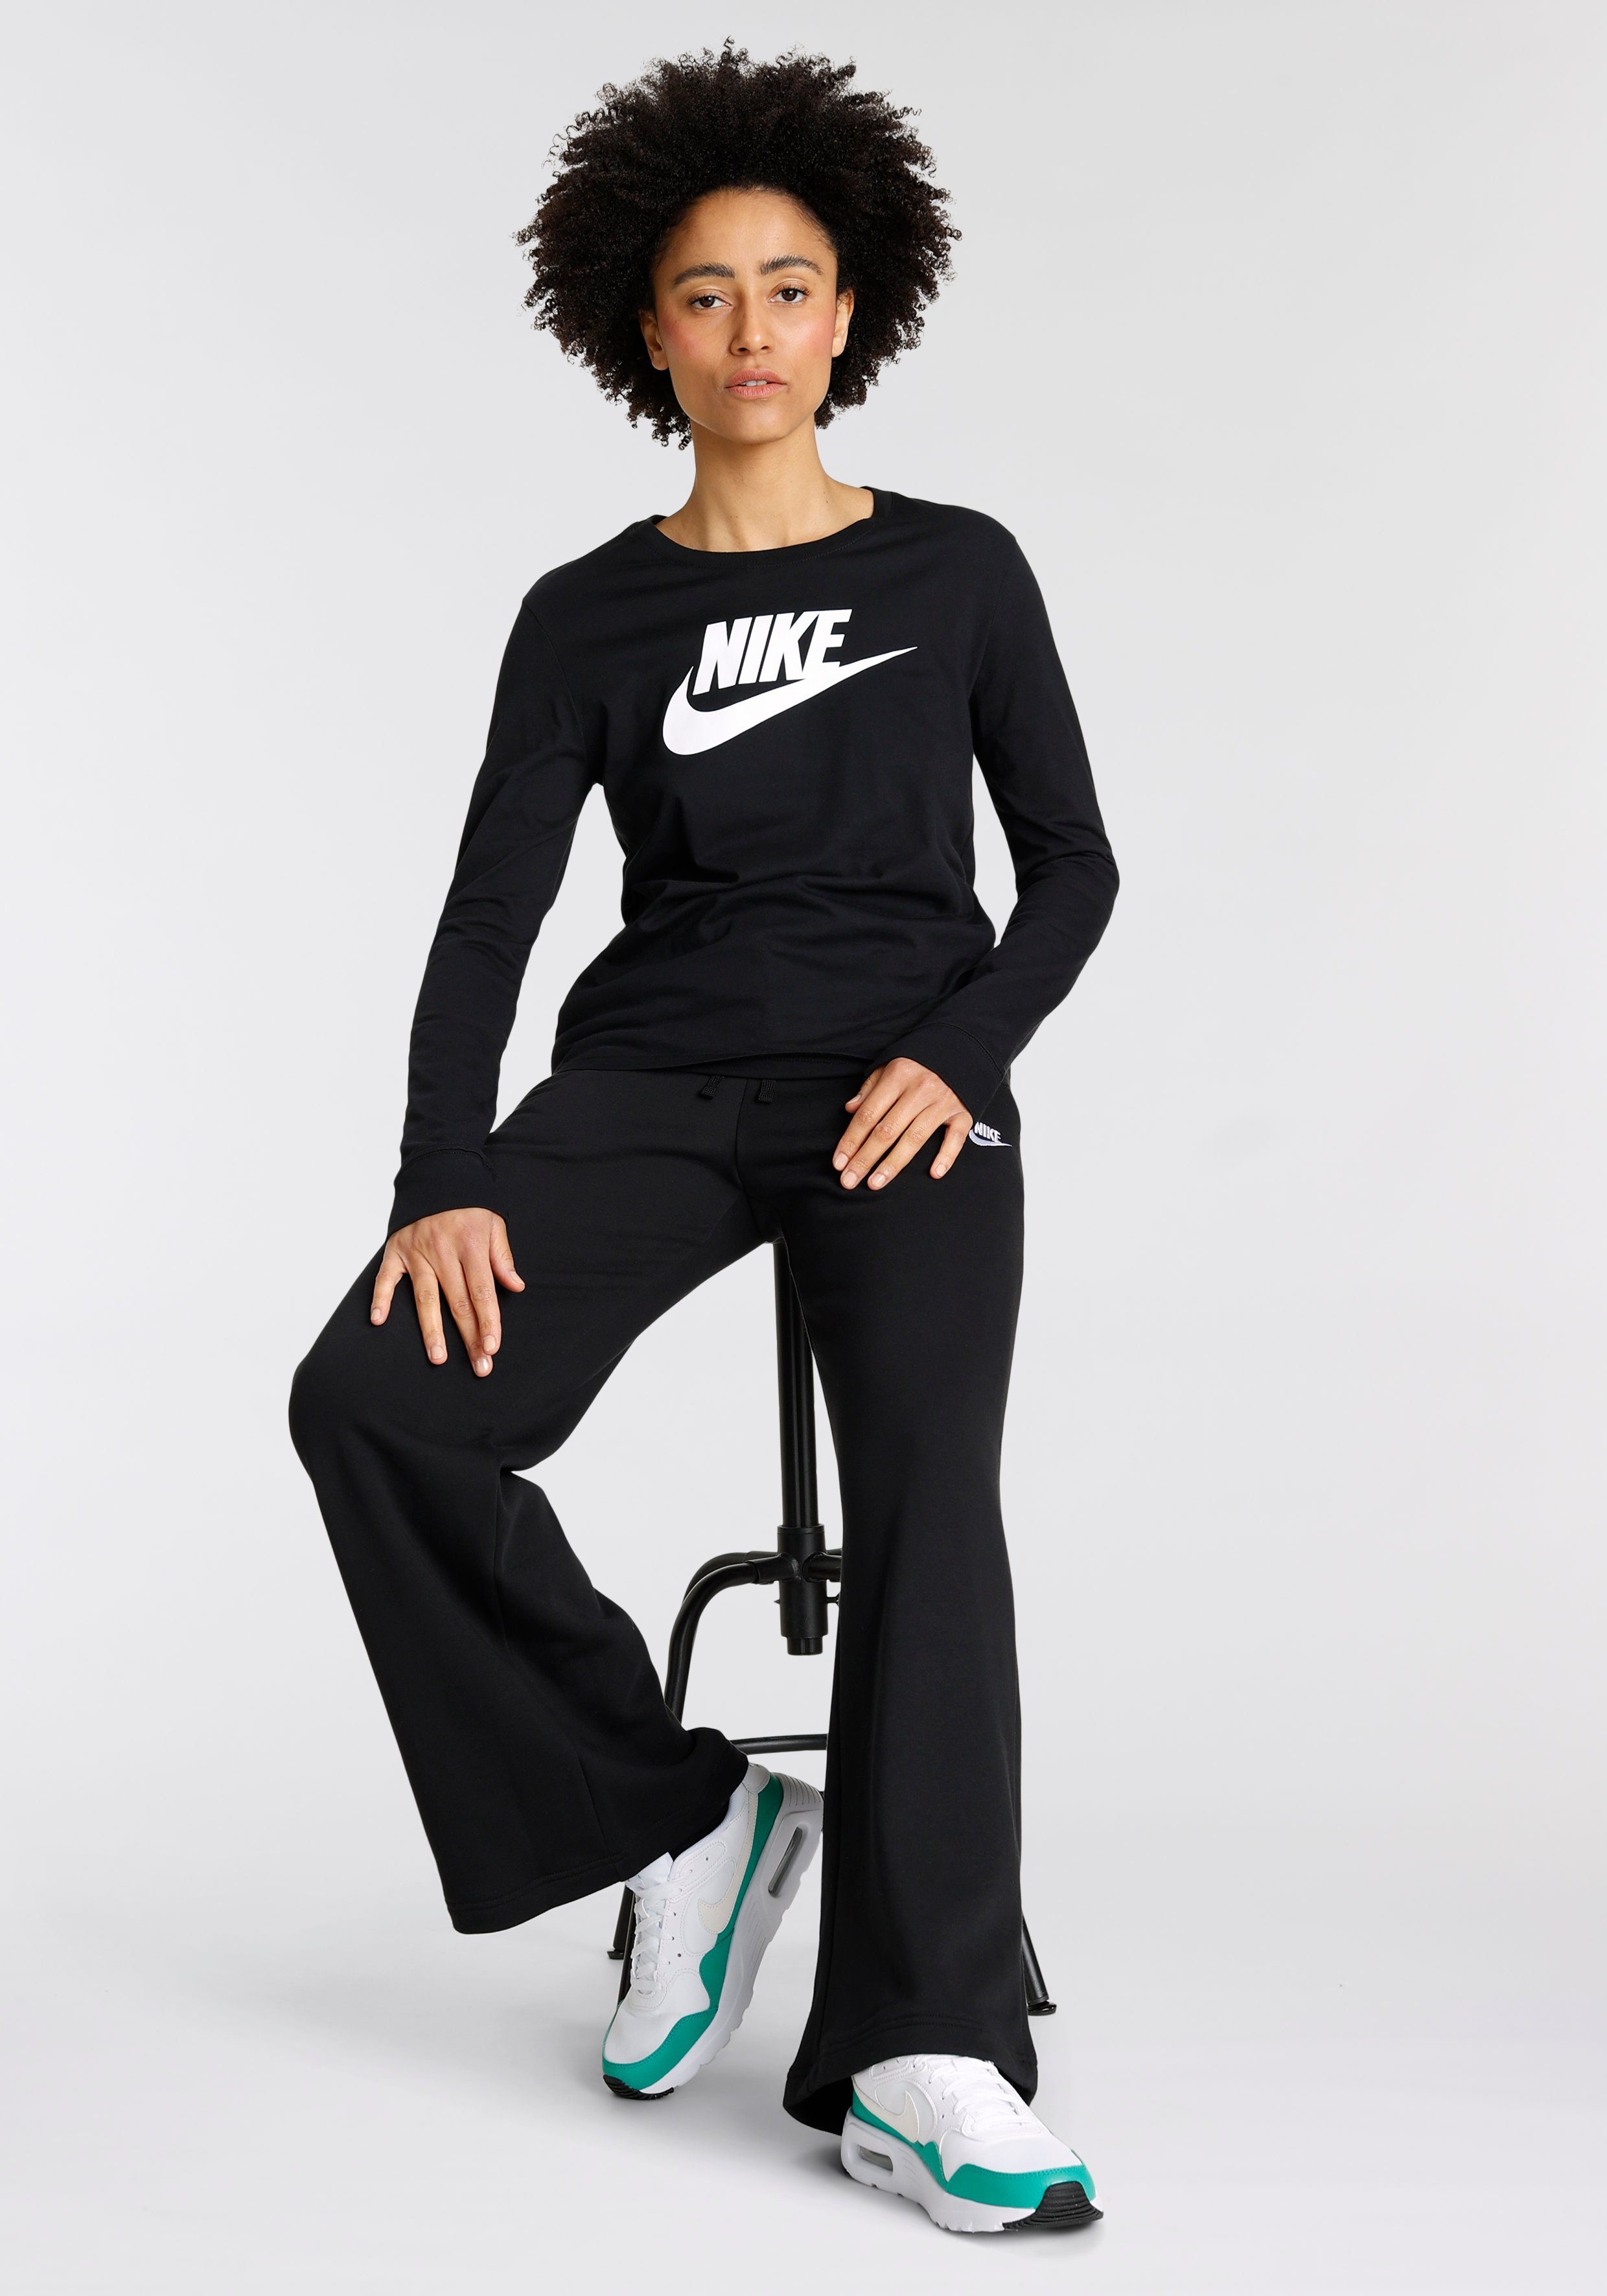 Nike Mode online kaufen » Nike Bekleidung | OTTO